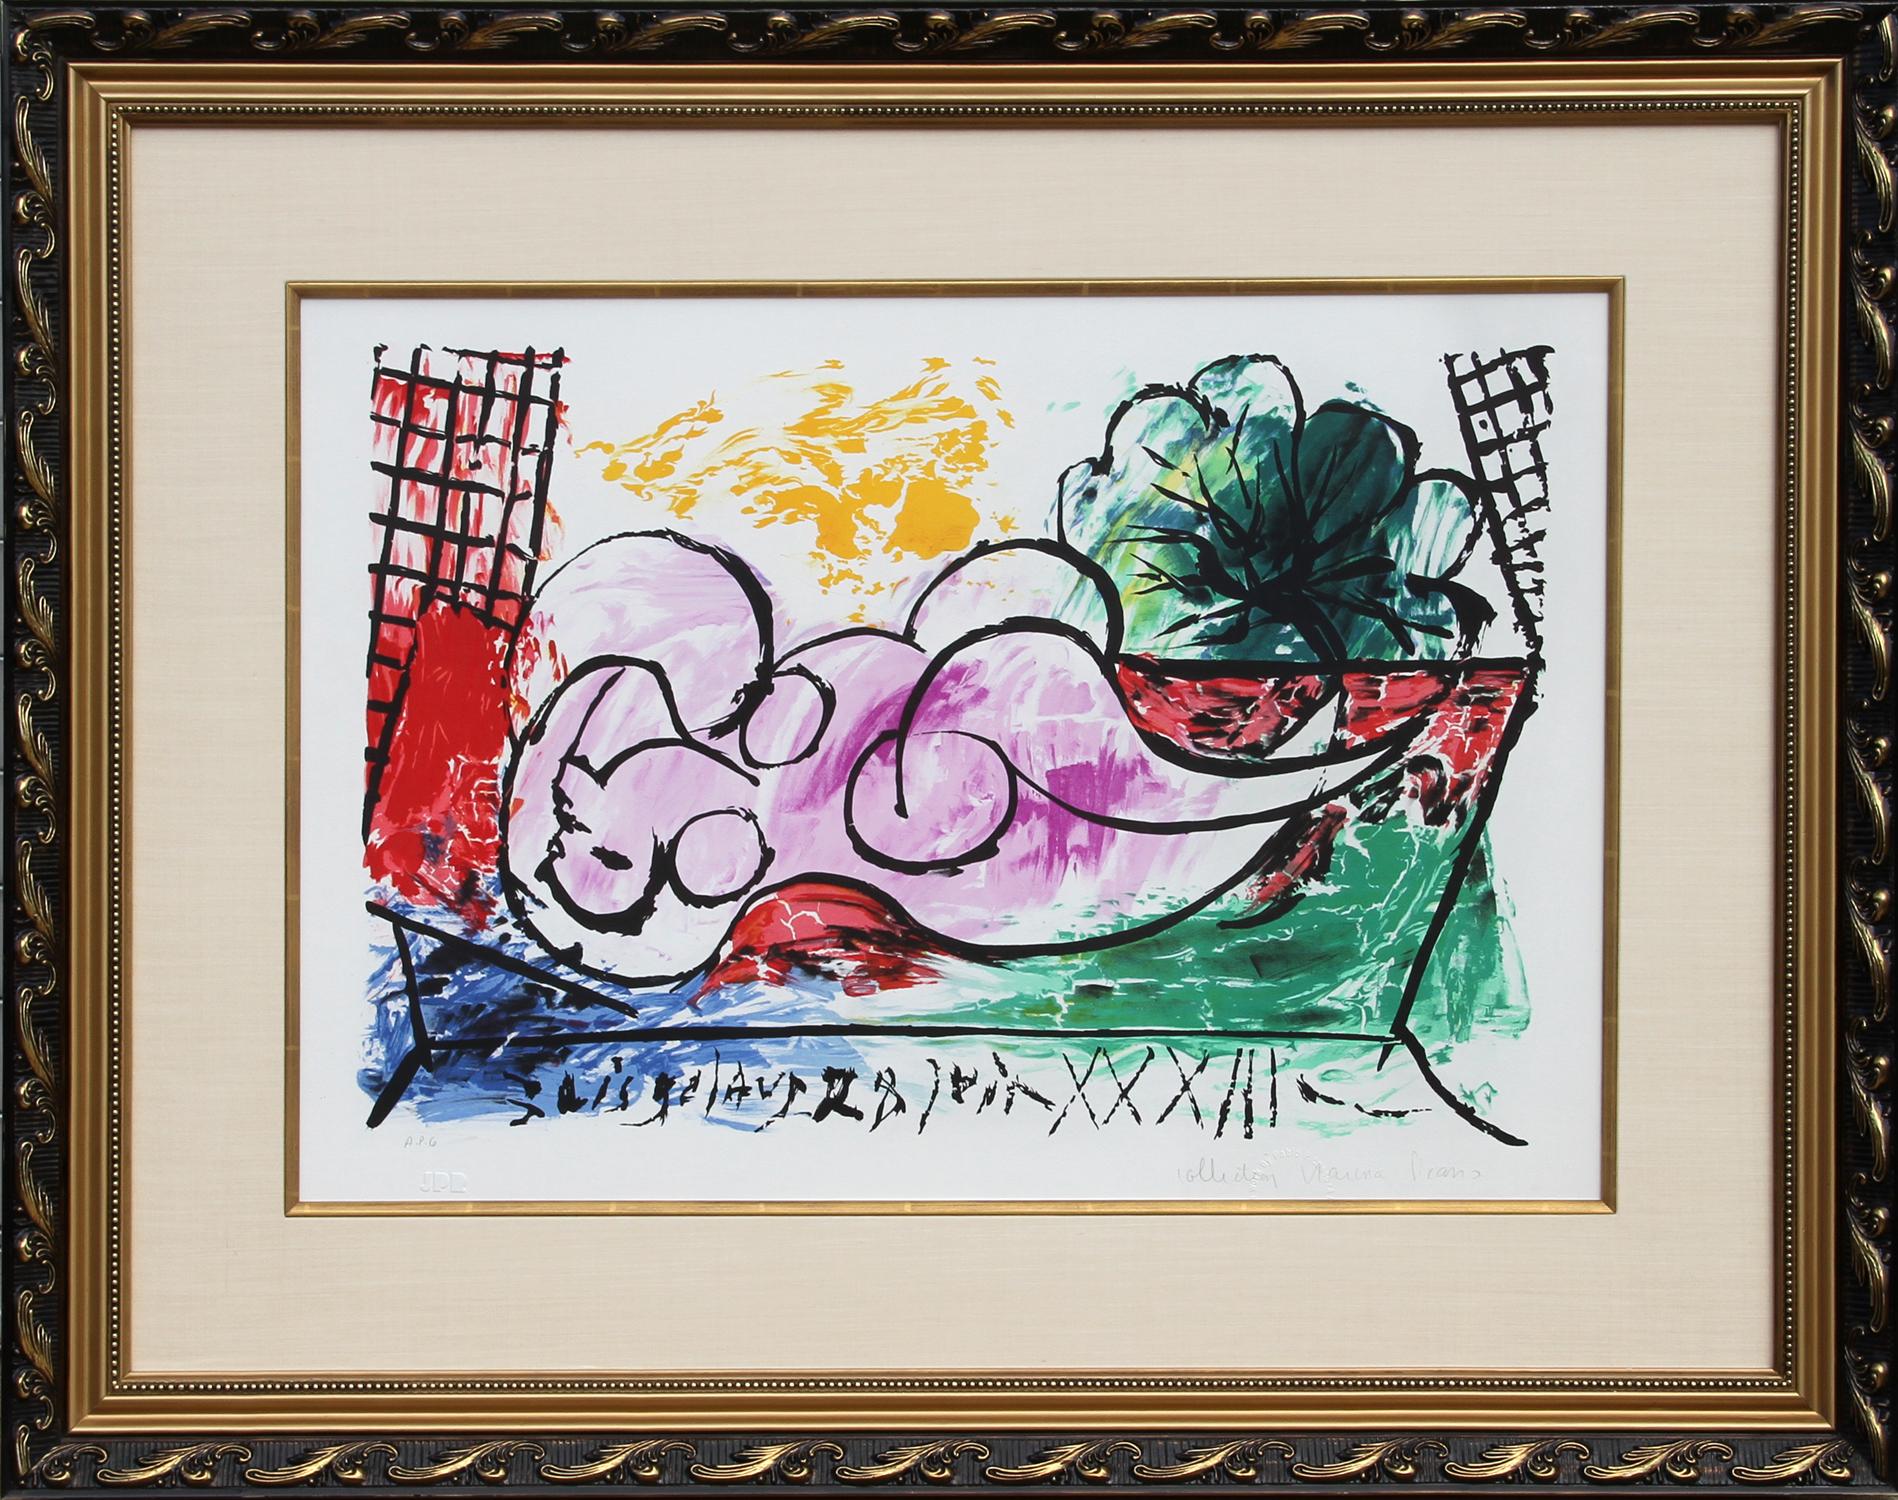 Cette estampe de Pablo Picasso représente une femme nue qui s'est endormie. La figure est inclinée vers le spectateur, reposant sur le dos. L'utilisation par l'artiste de lignes fluides et de couleurs vives et douces anime la composition alors même